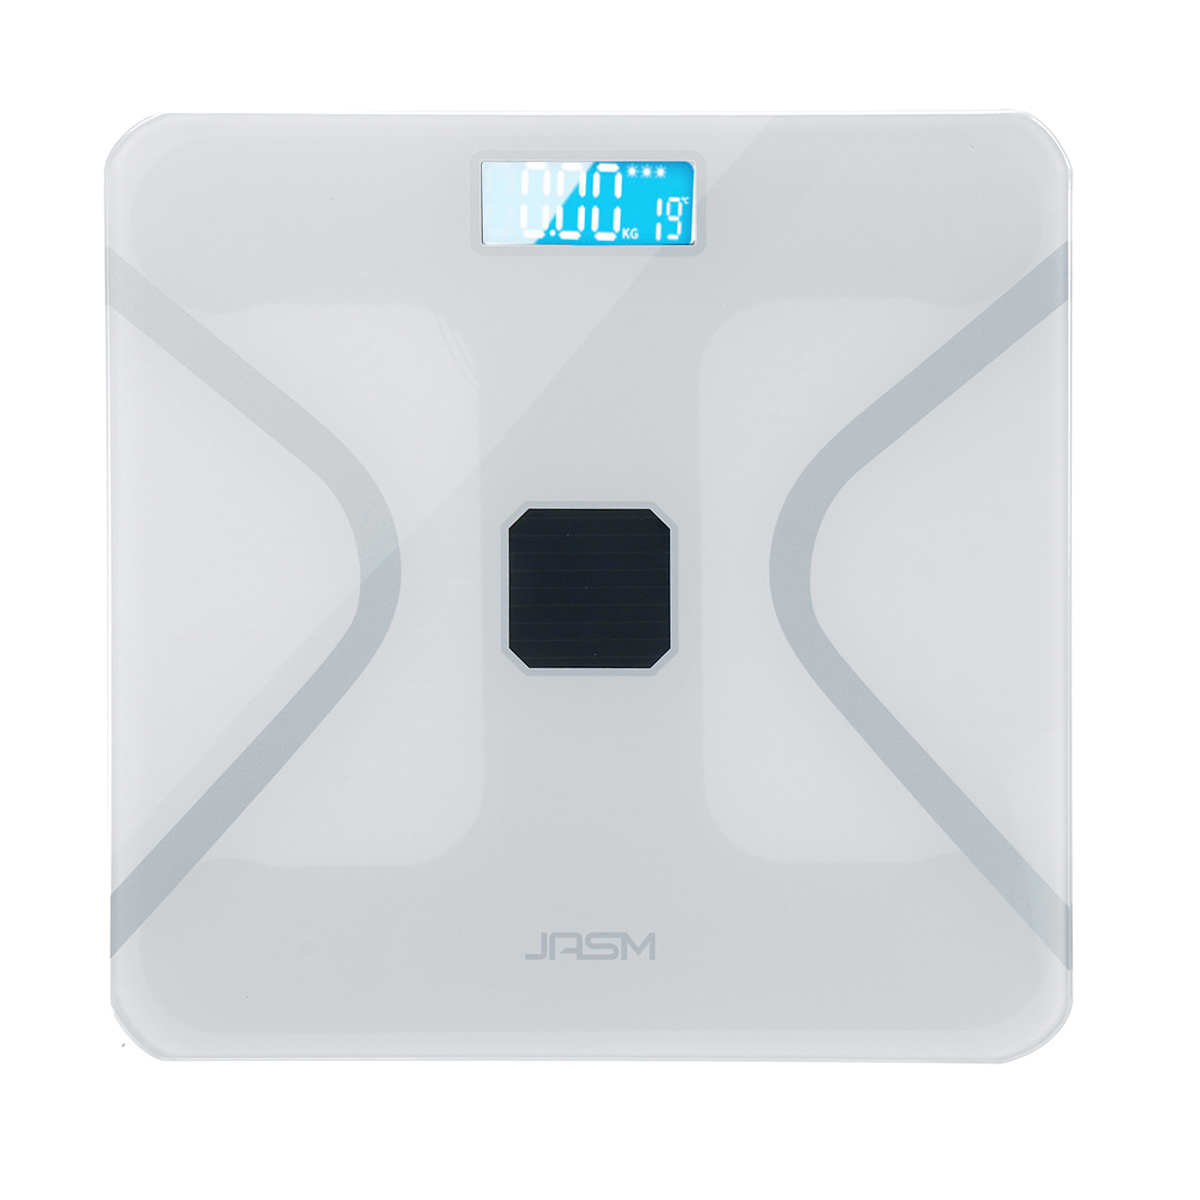 

Digital Wireless Body Fat Scale Analyzer Health Weight Scale